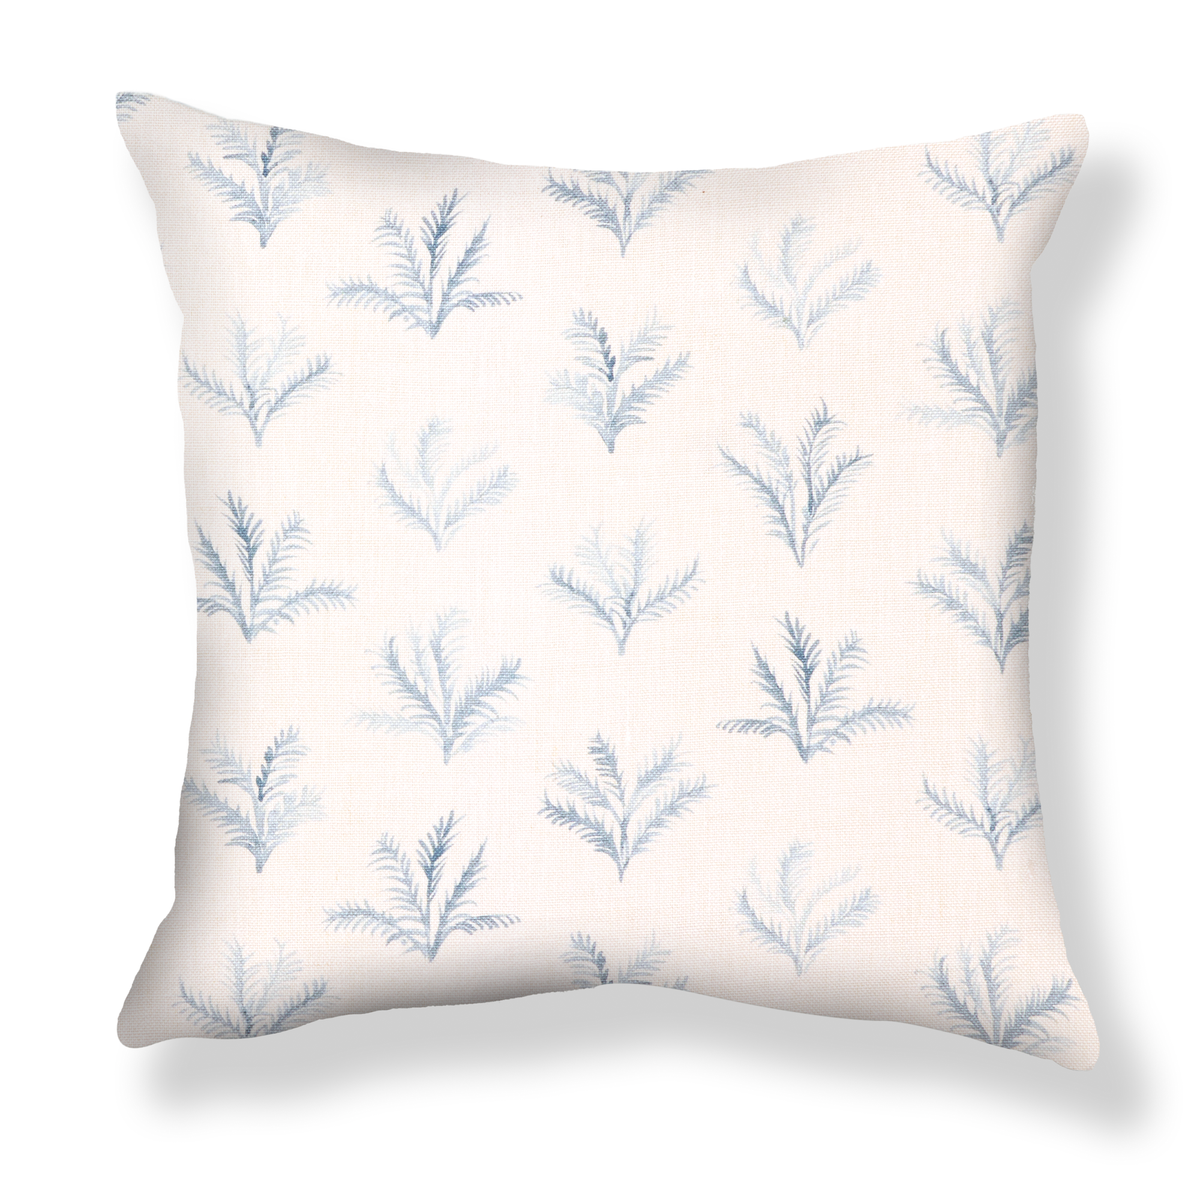 Little Palm Pillow in Light Blue